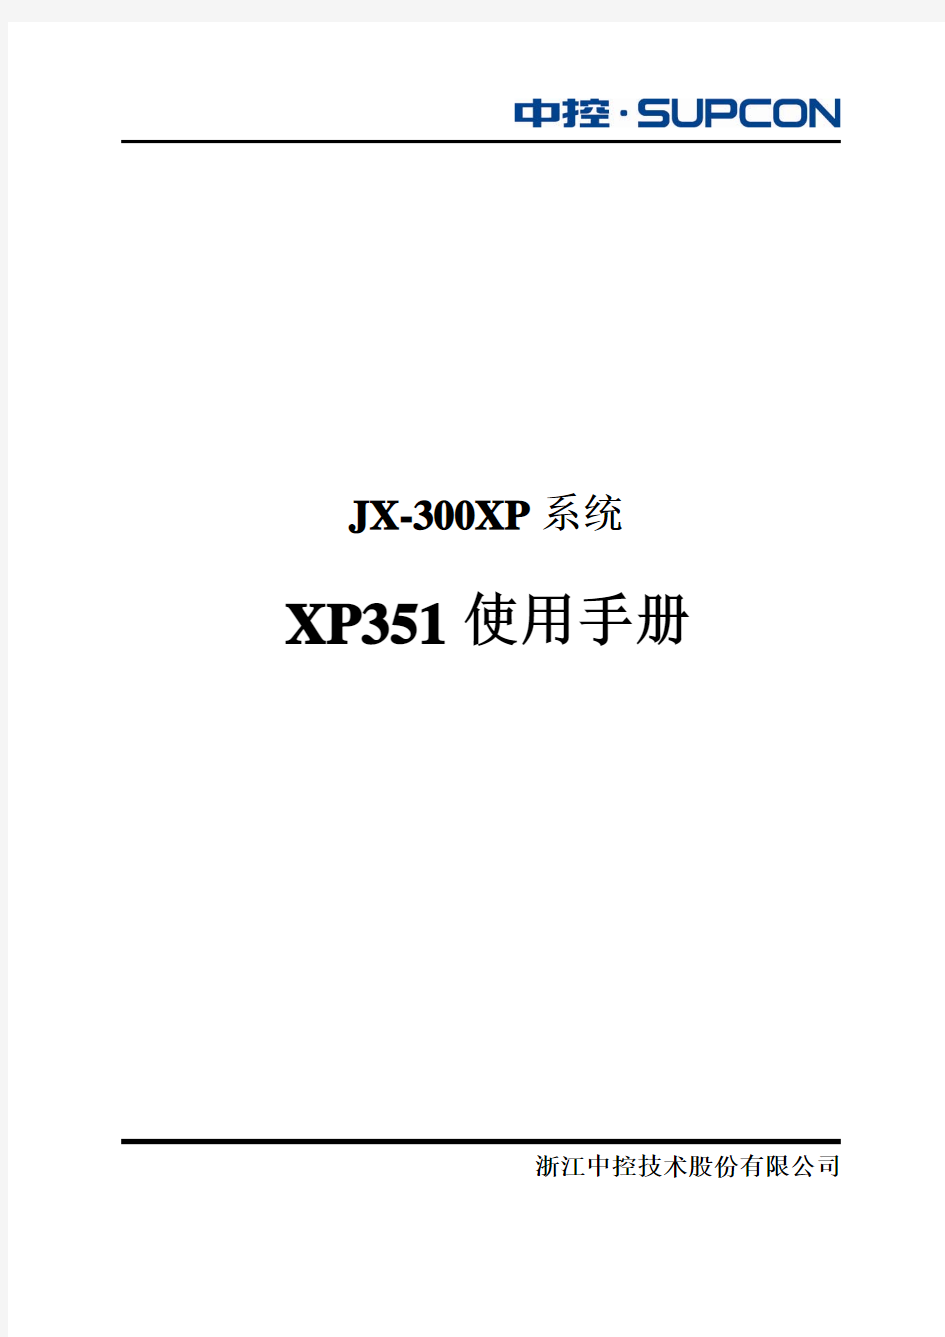 XP351 使用手册